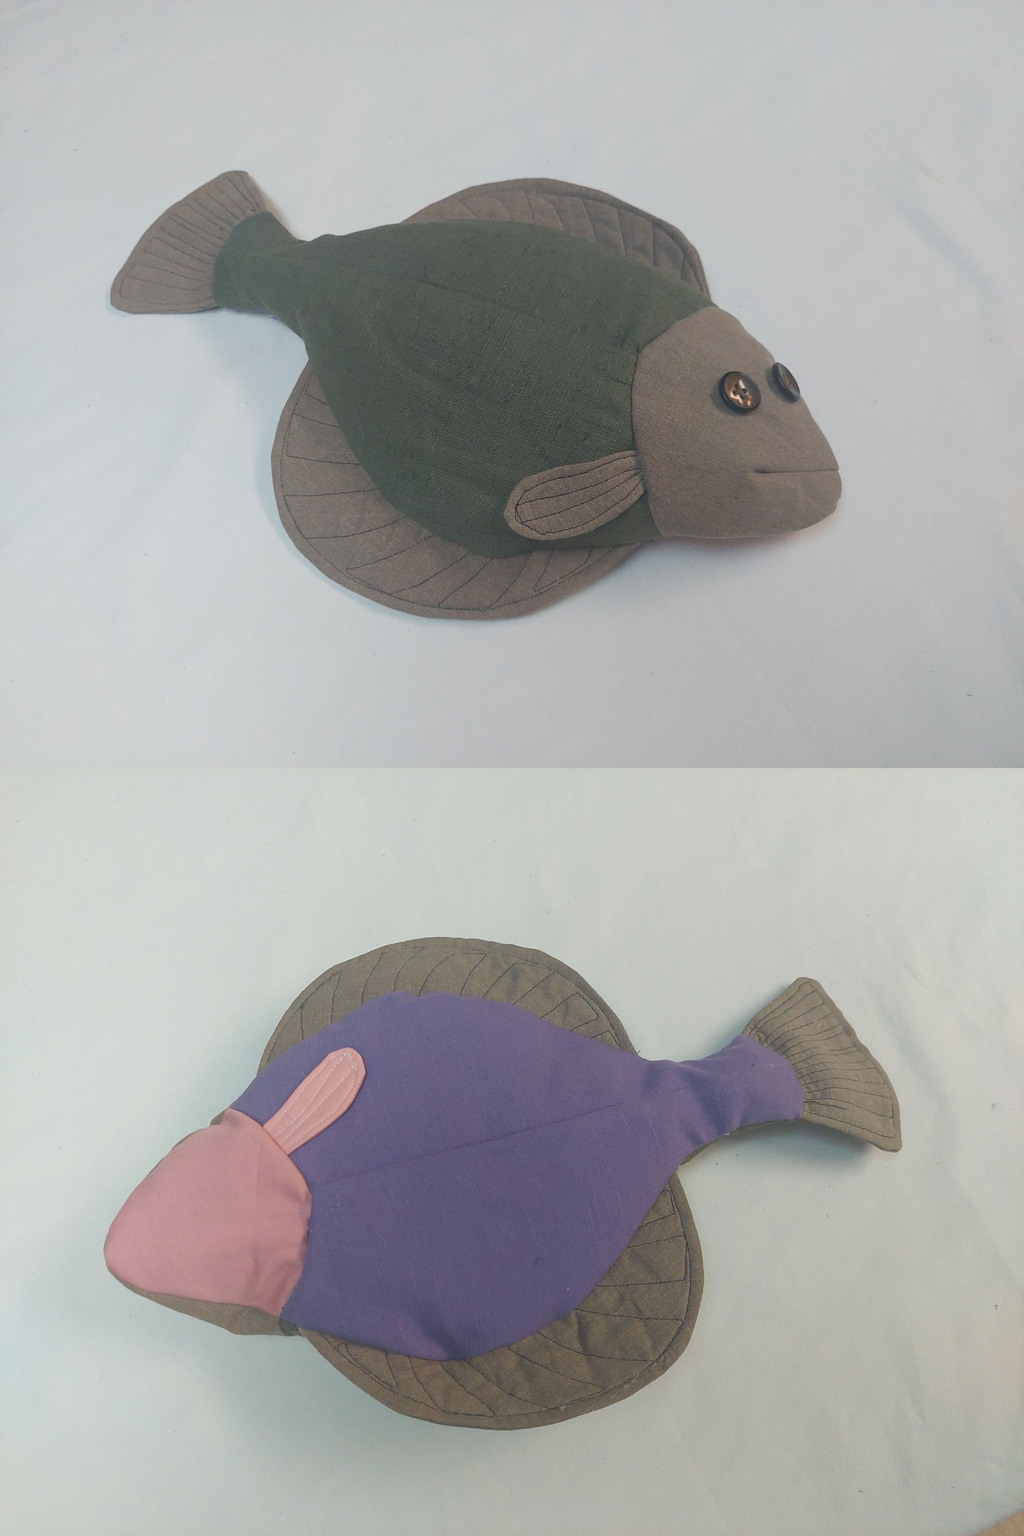 Most recent image: Flatfish plushie toy